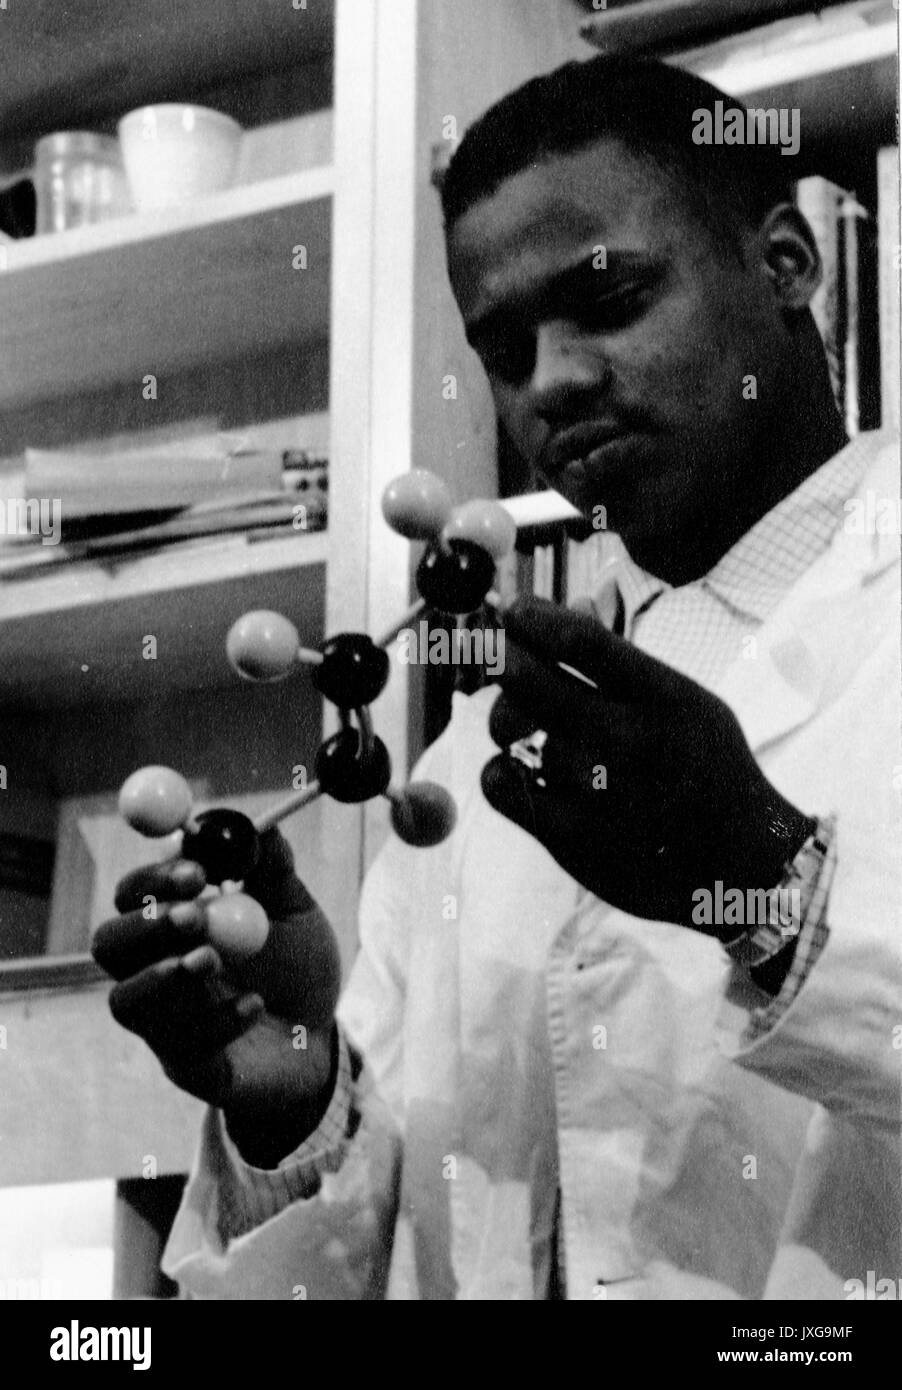 Ernest UN Bates, d'étudiants Noirs américains, Portrait, debout, la poitrine vers le haut, les trois quarts view, ca 22 ans, Bates est maintenant un modèle moléculaire dans un laboratoire, 1958. Banque D'Images